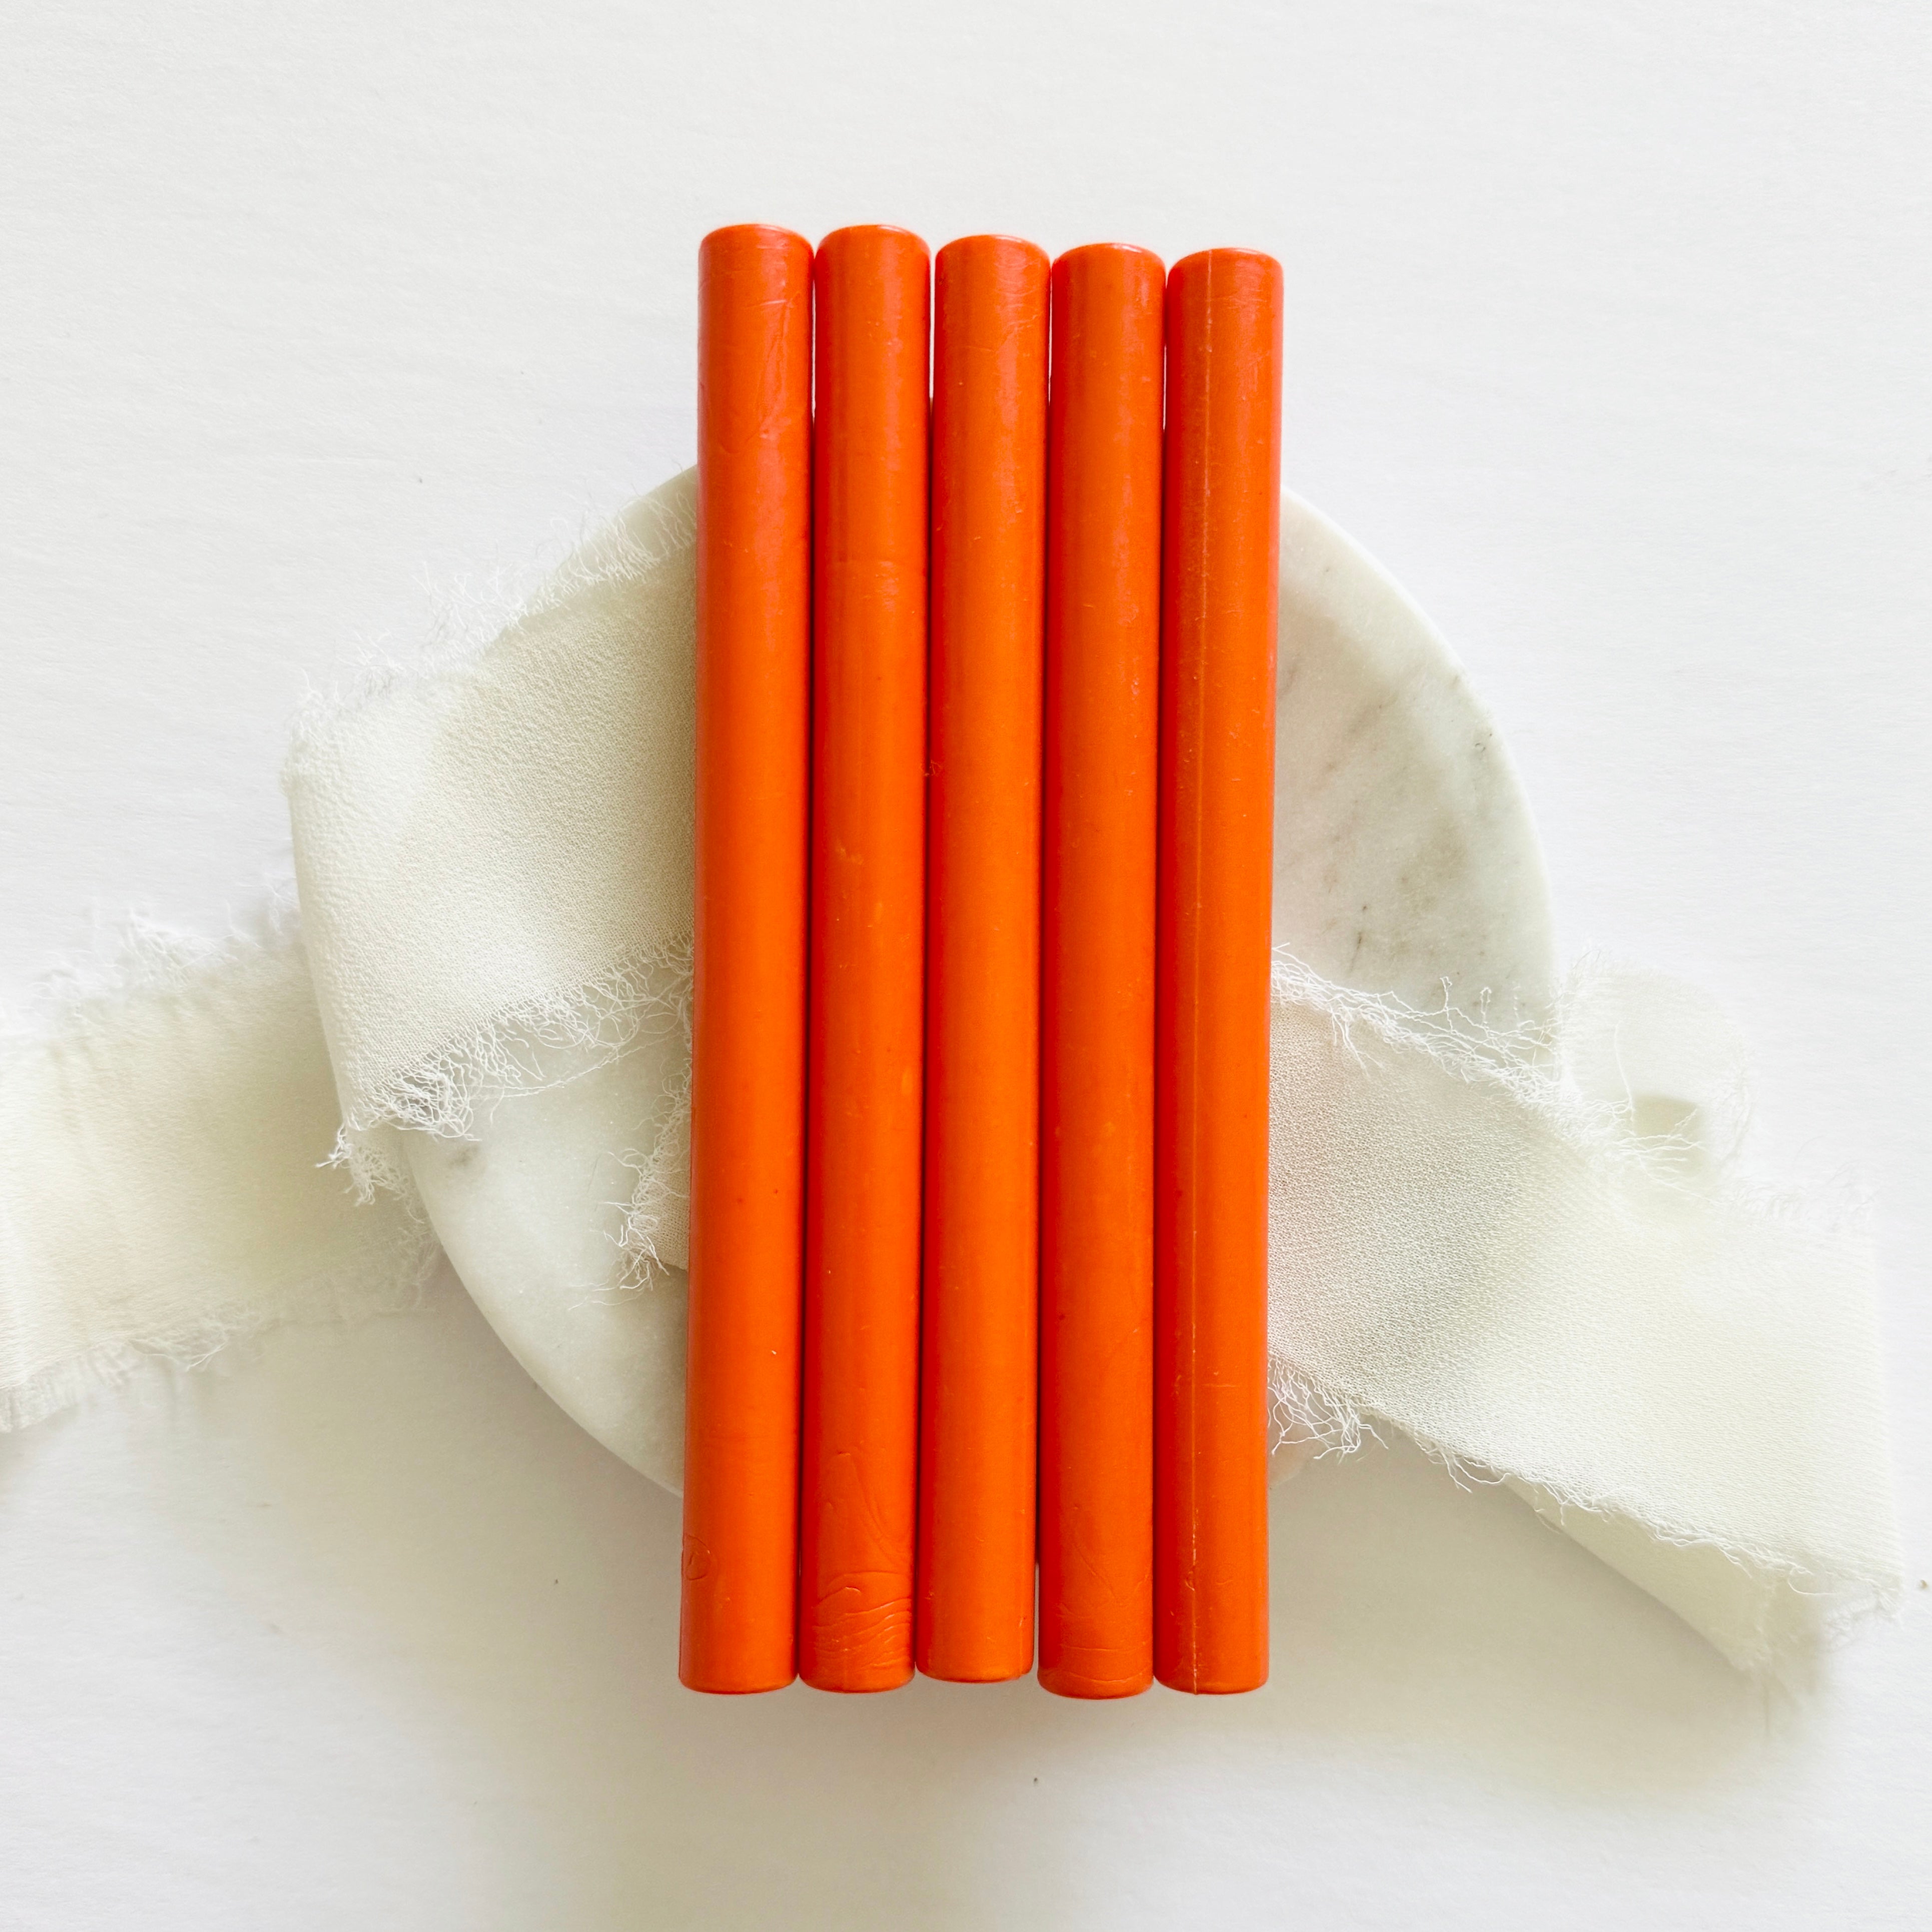 Orange Sealing Wax Sticks - Discounted